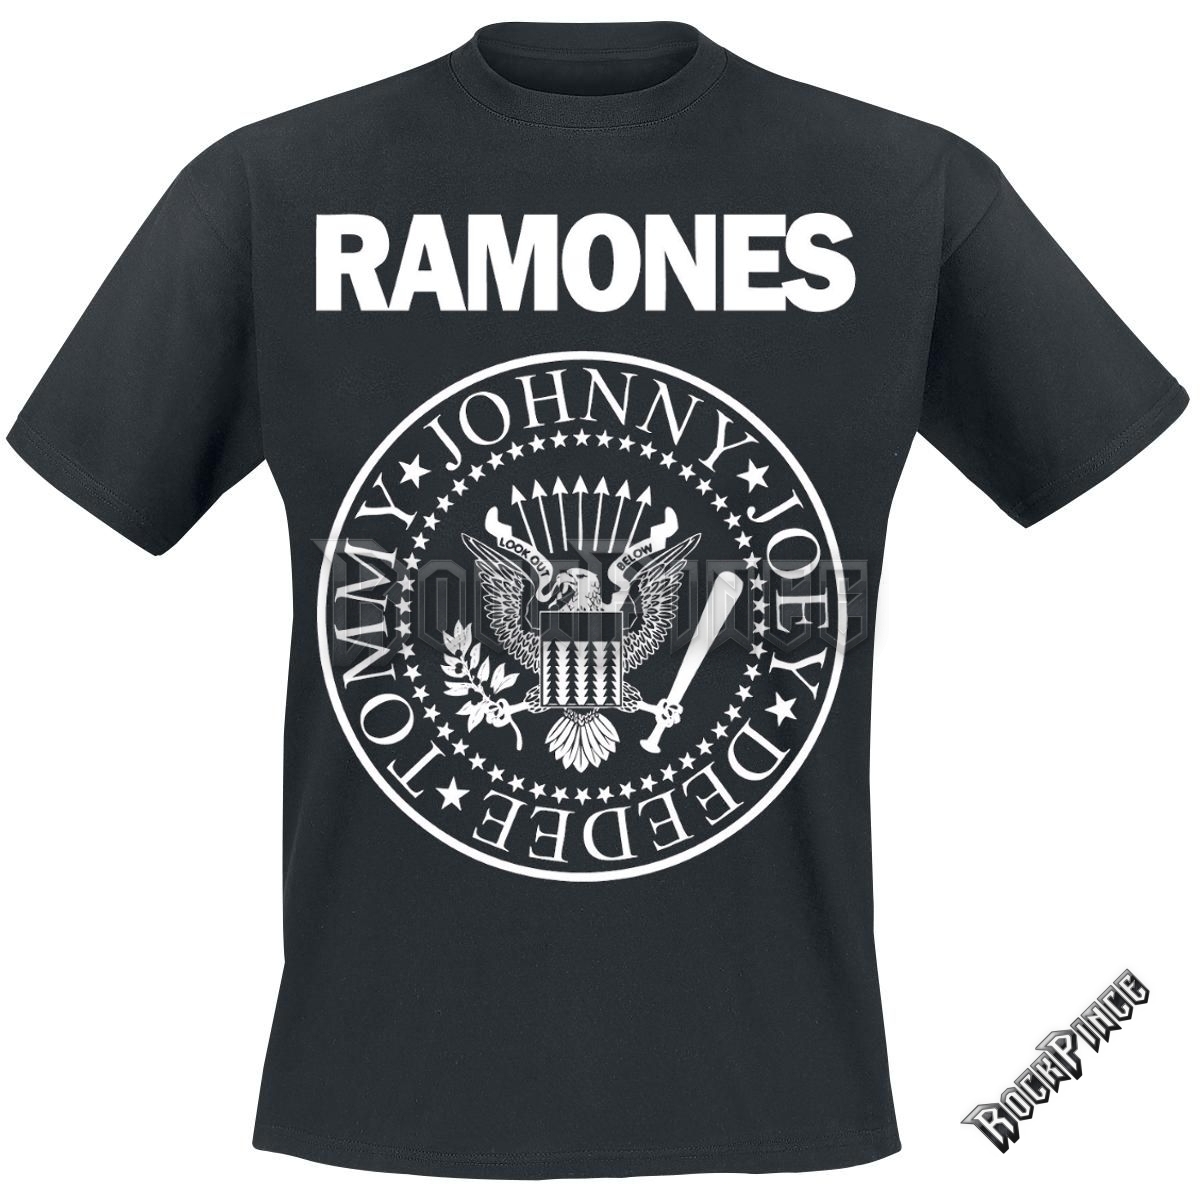 Ramones - Hey ho lets go - UNISEX PÓLÓ